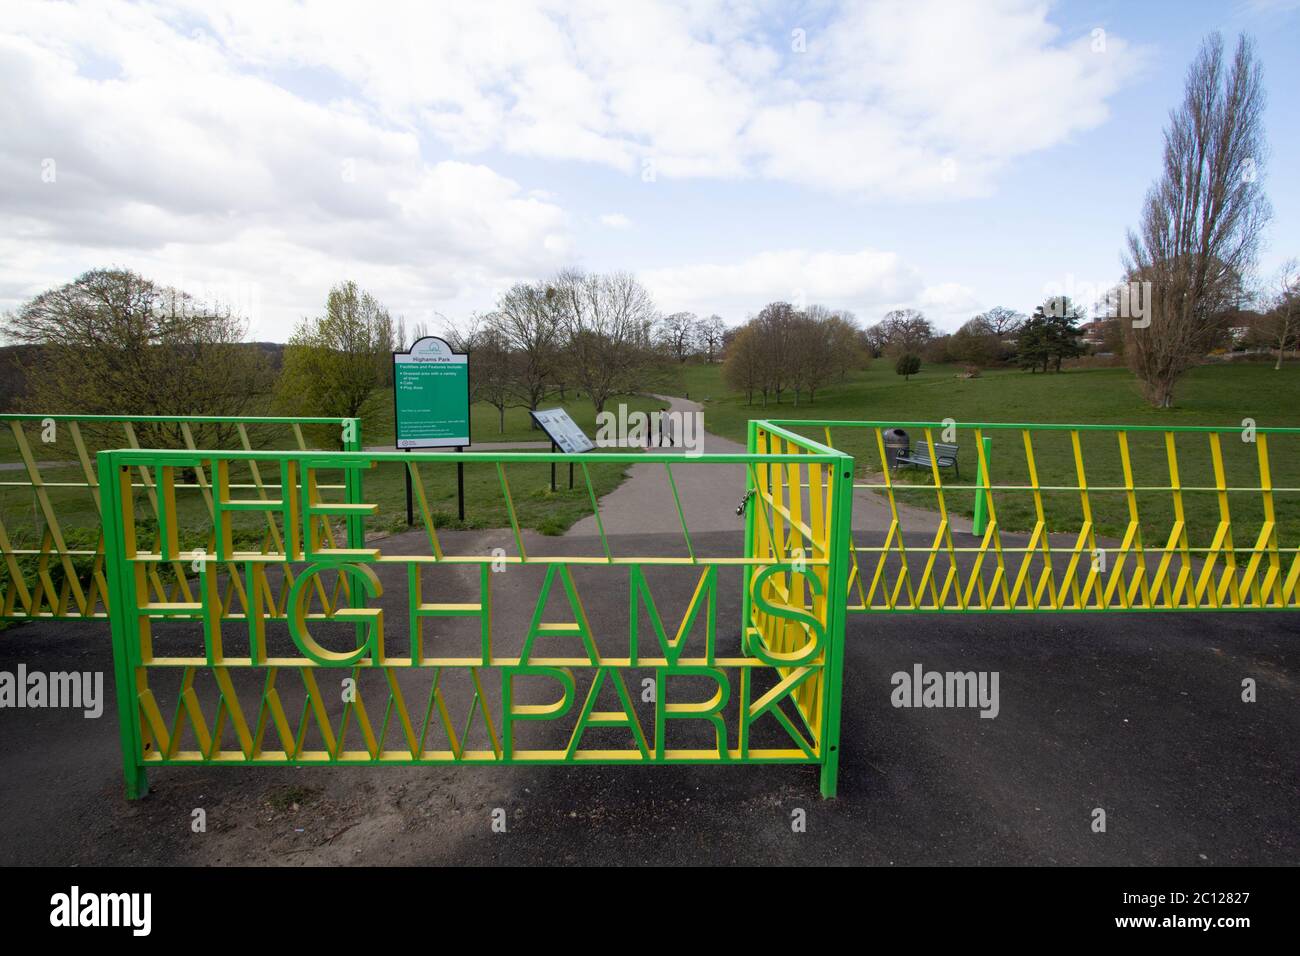 Portes menant au parc HIghams, Highams Park London, espace vert en banlieue de Londres avec panneaux de signalisation Banque D'Images